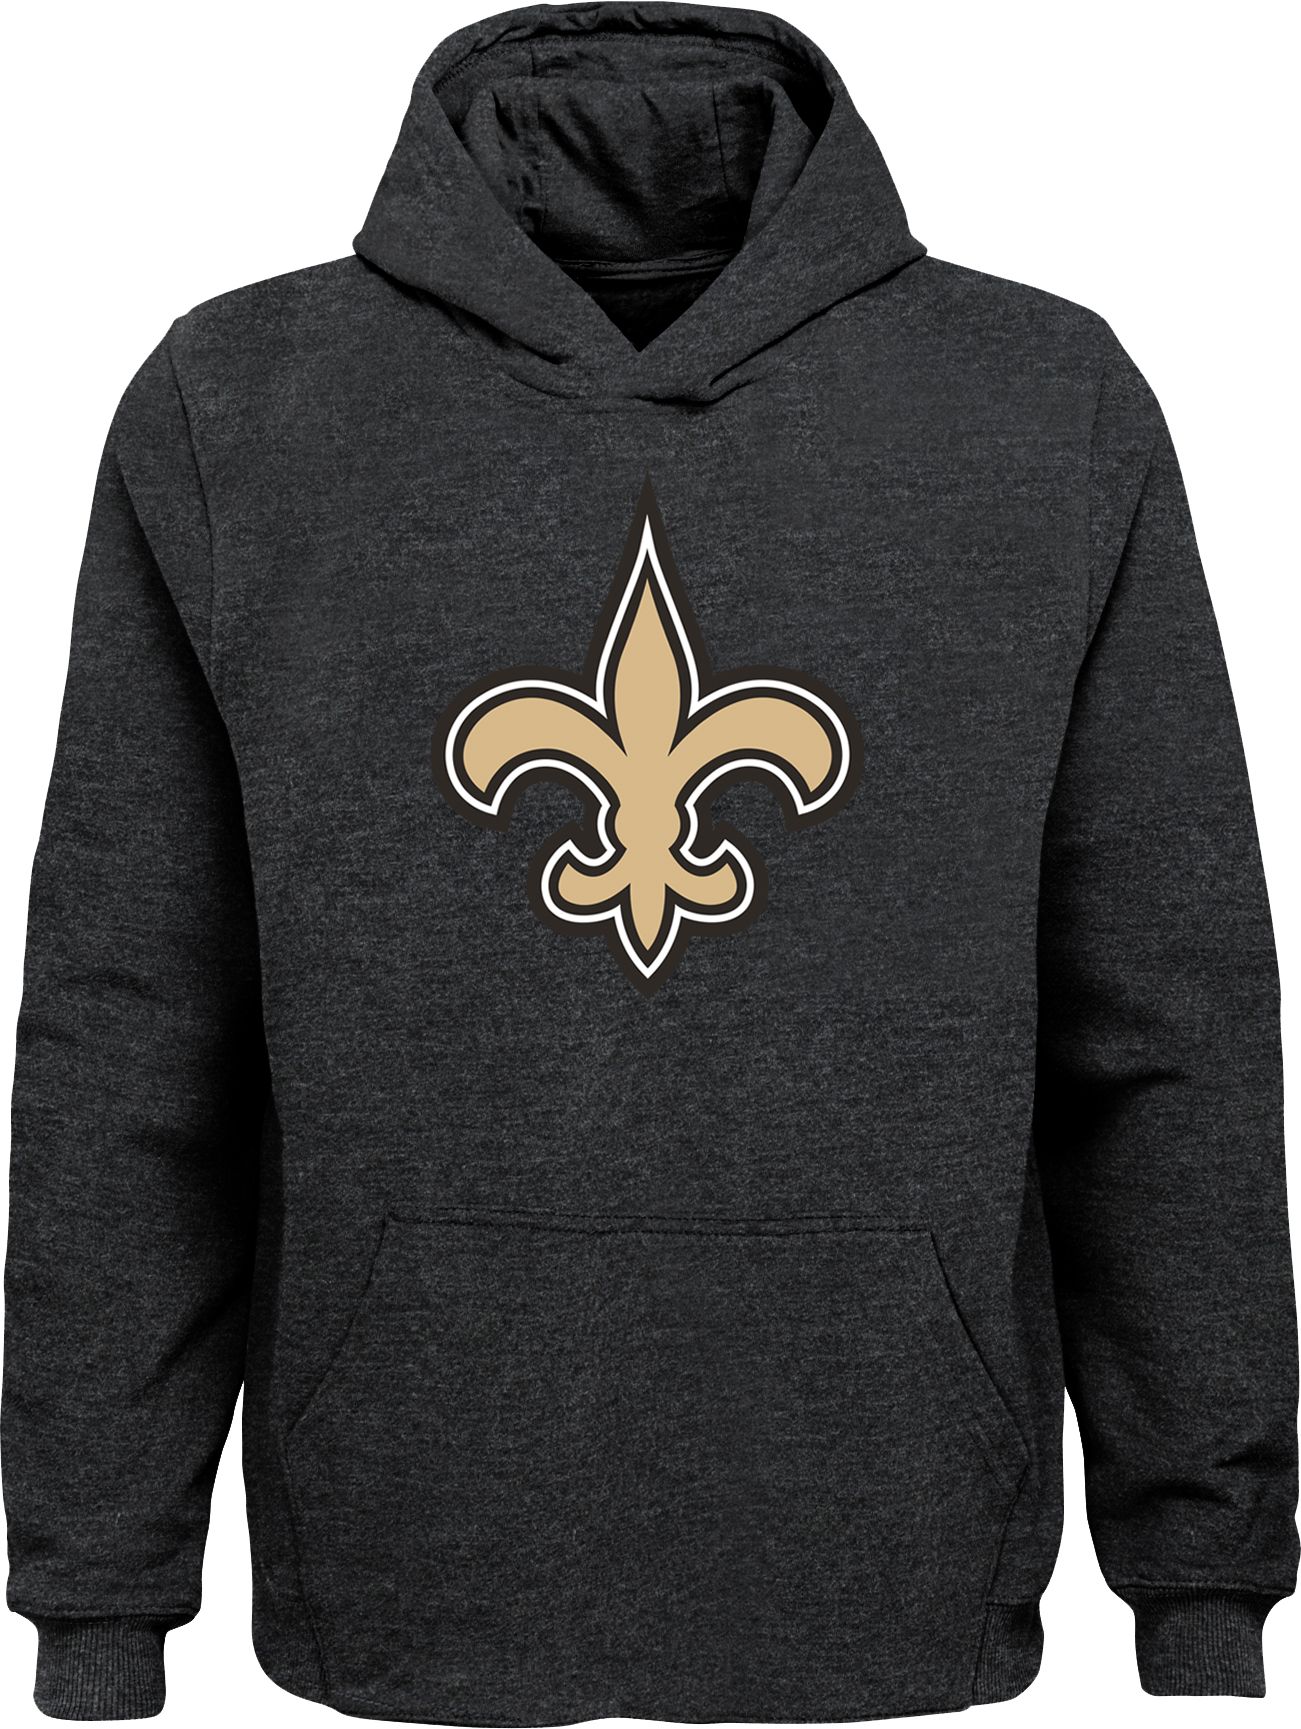 New Orleans Saints Logo Black Hoodie 